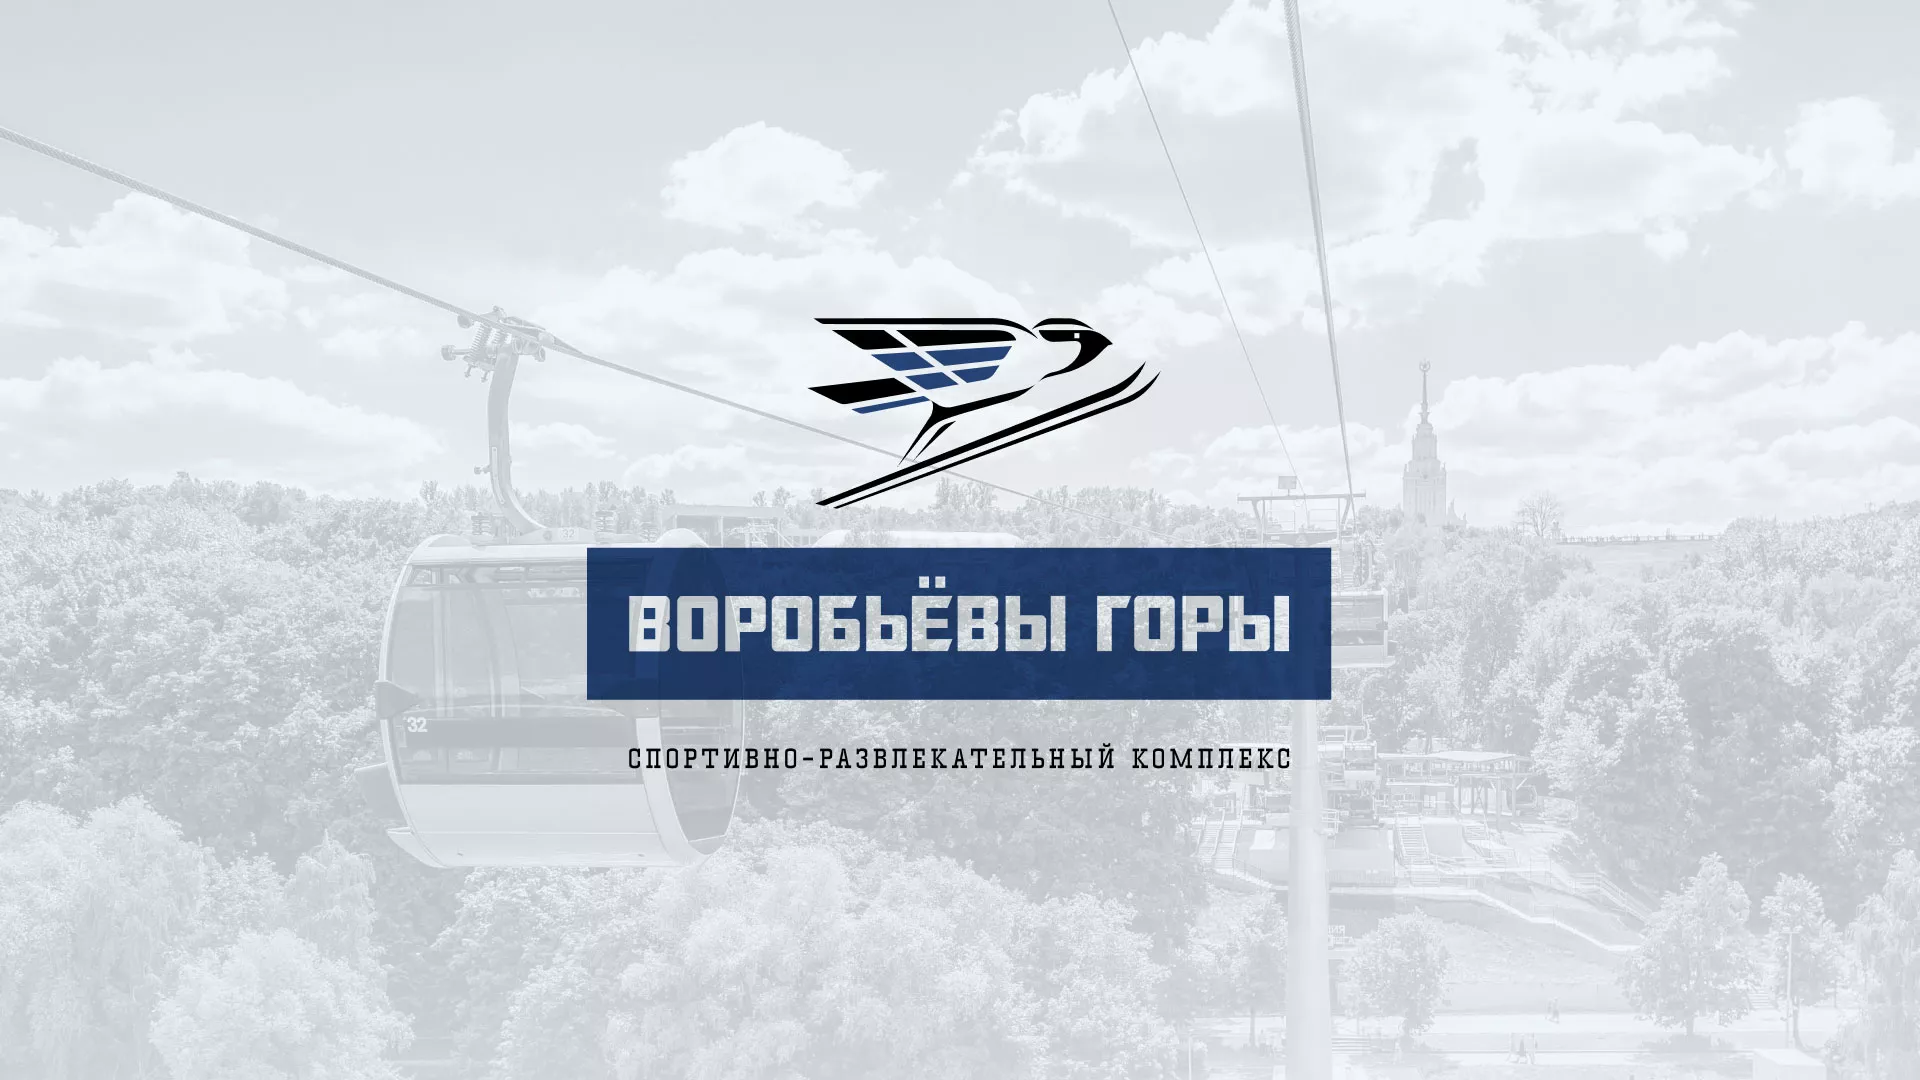 Разработка сайта в Семилуках для спортивно-развлекательного комплекса «Воробьёвы горы»